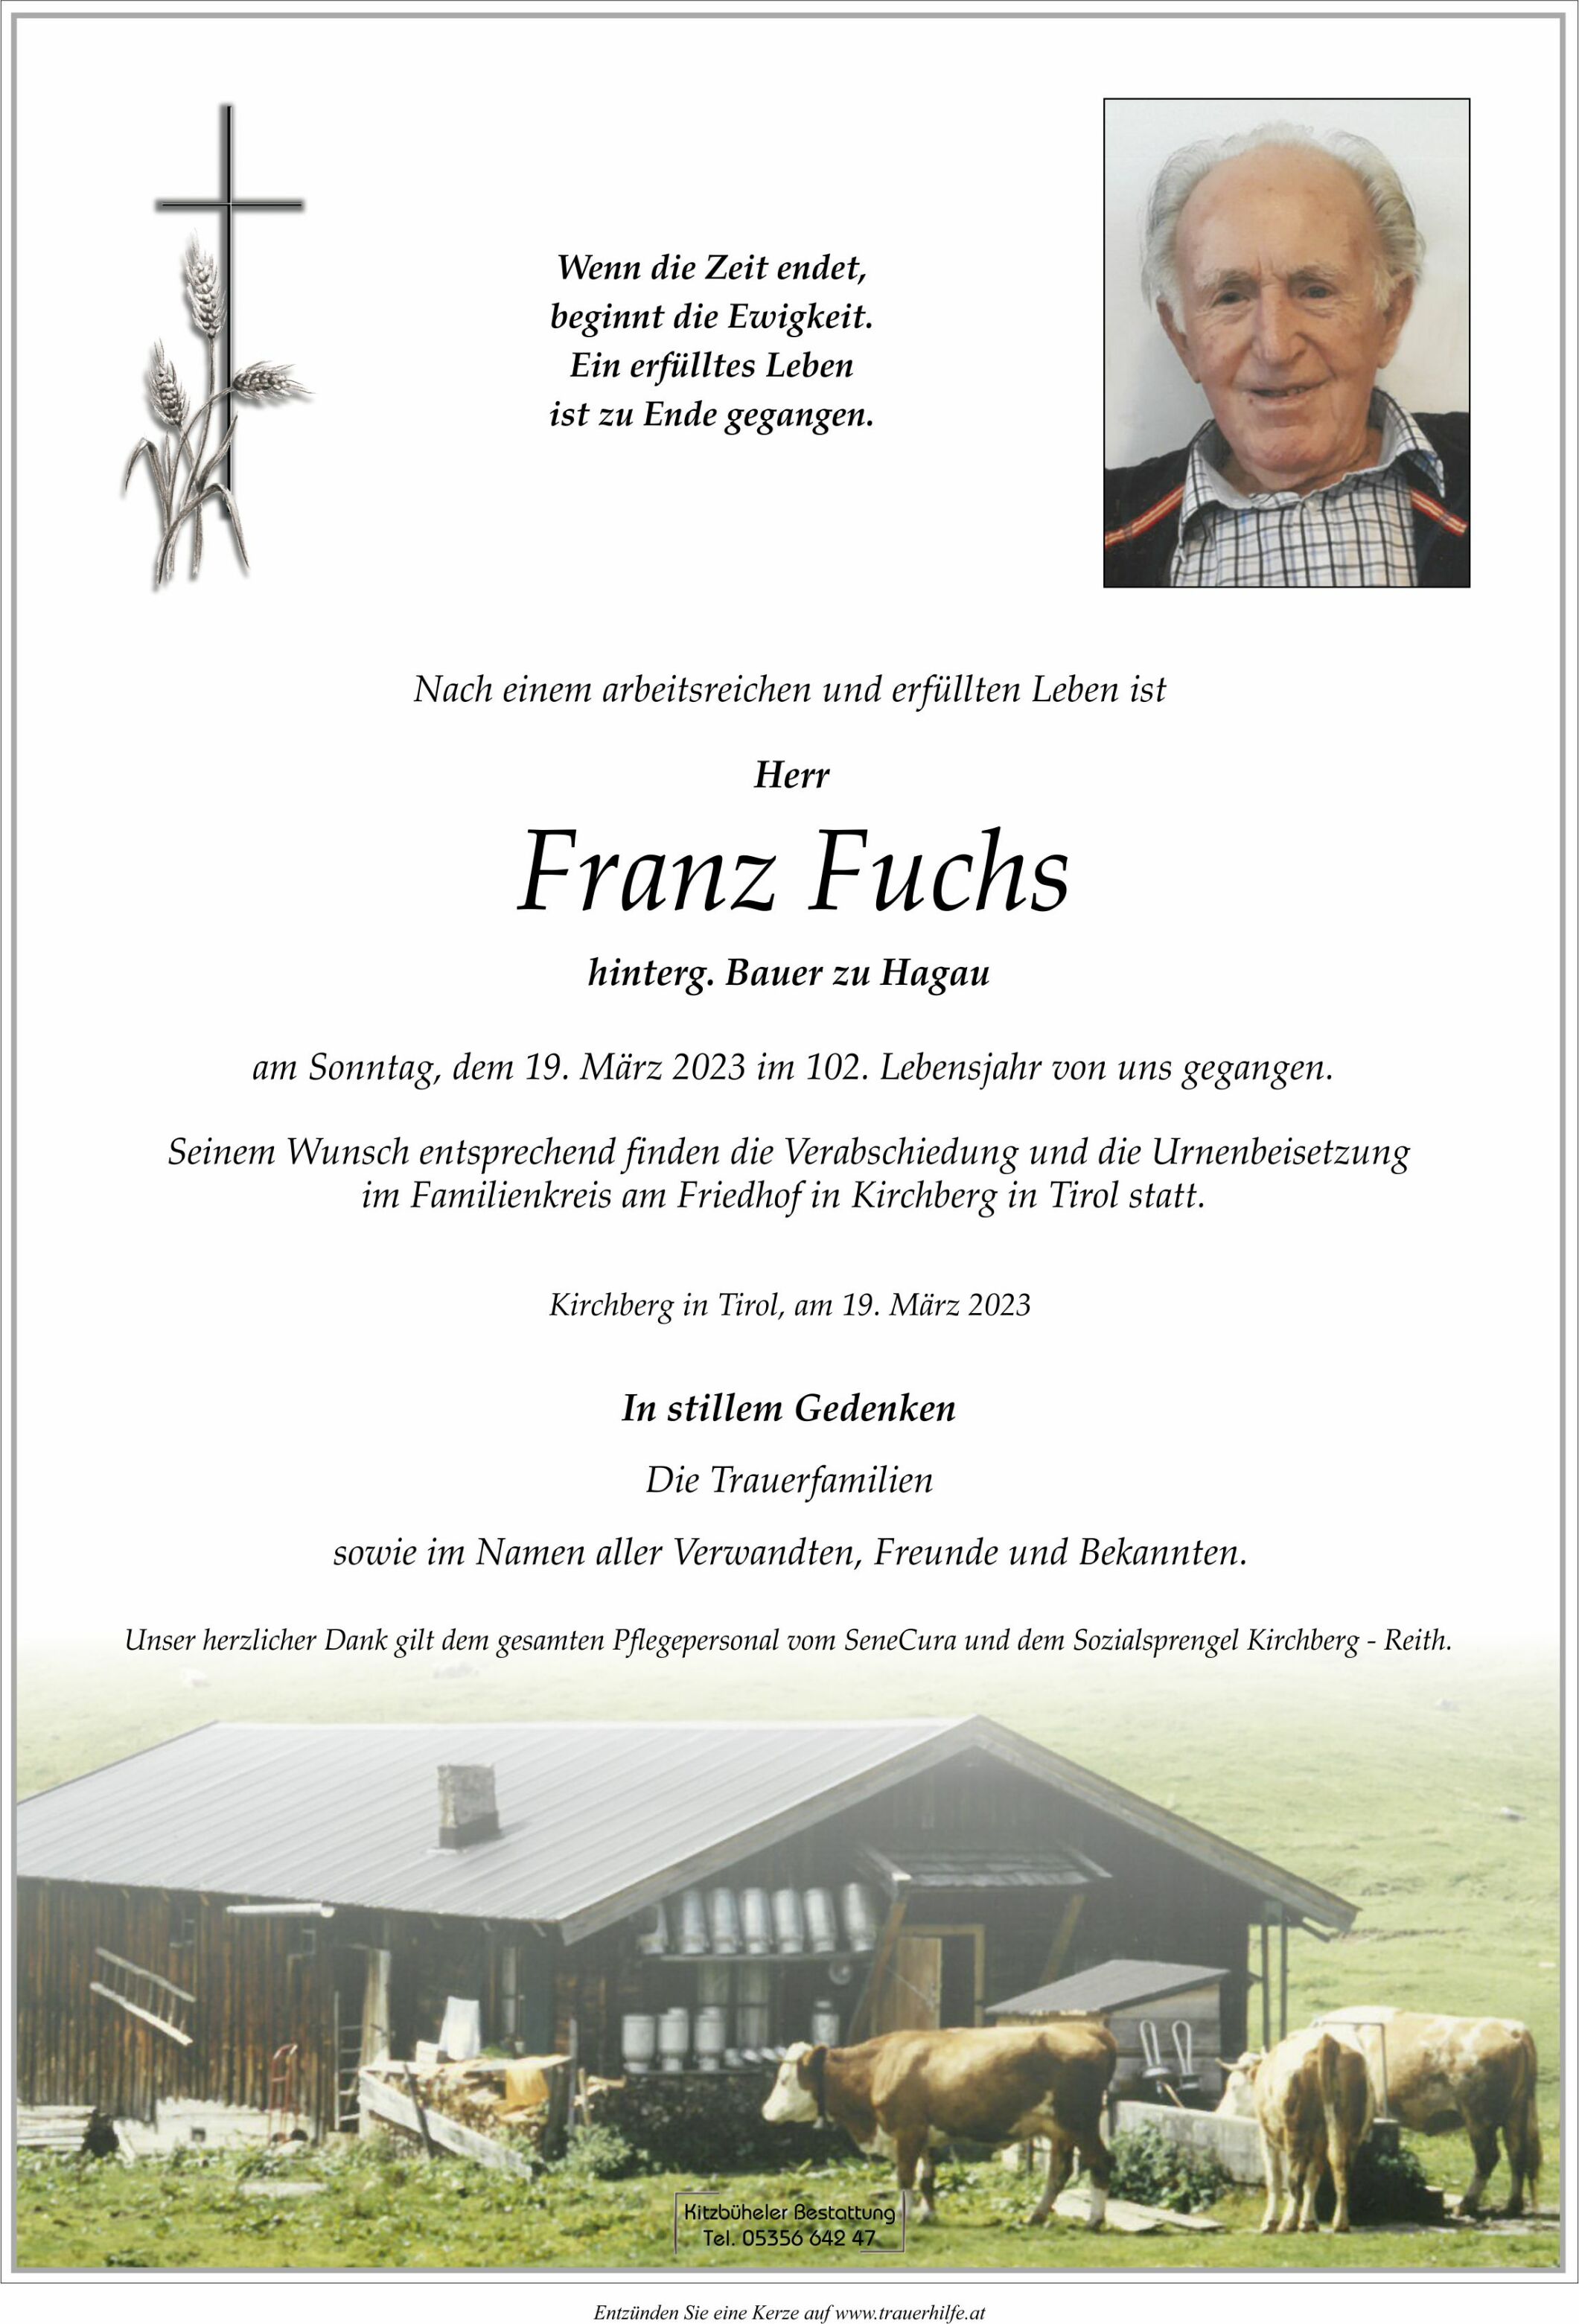 Franz Fuchs